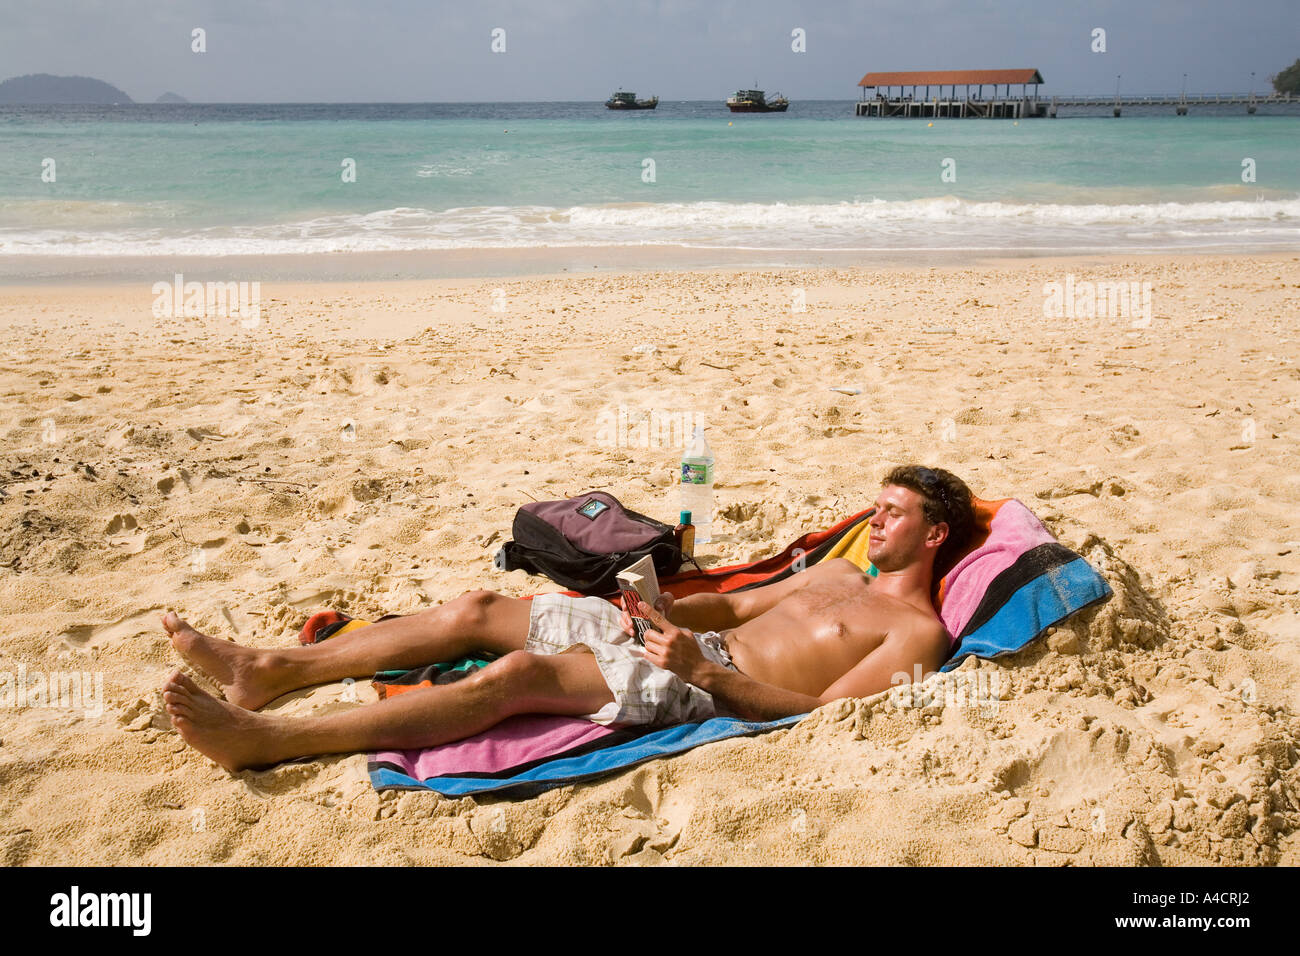 La Malaisie Pulao Tioman beach village Salang soleil man reading Banque D'Images